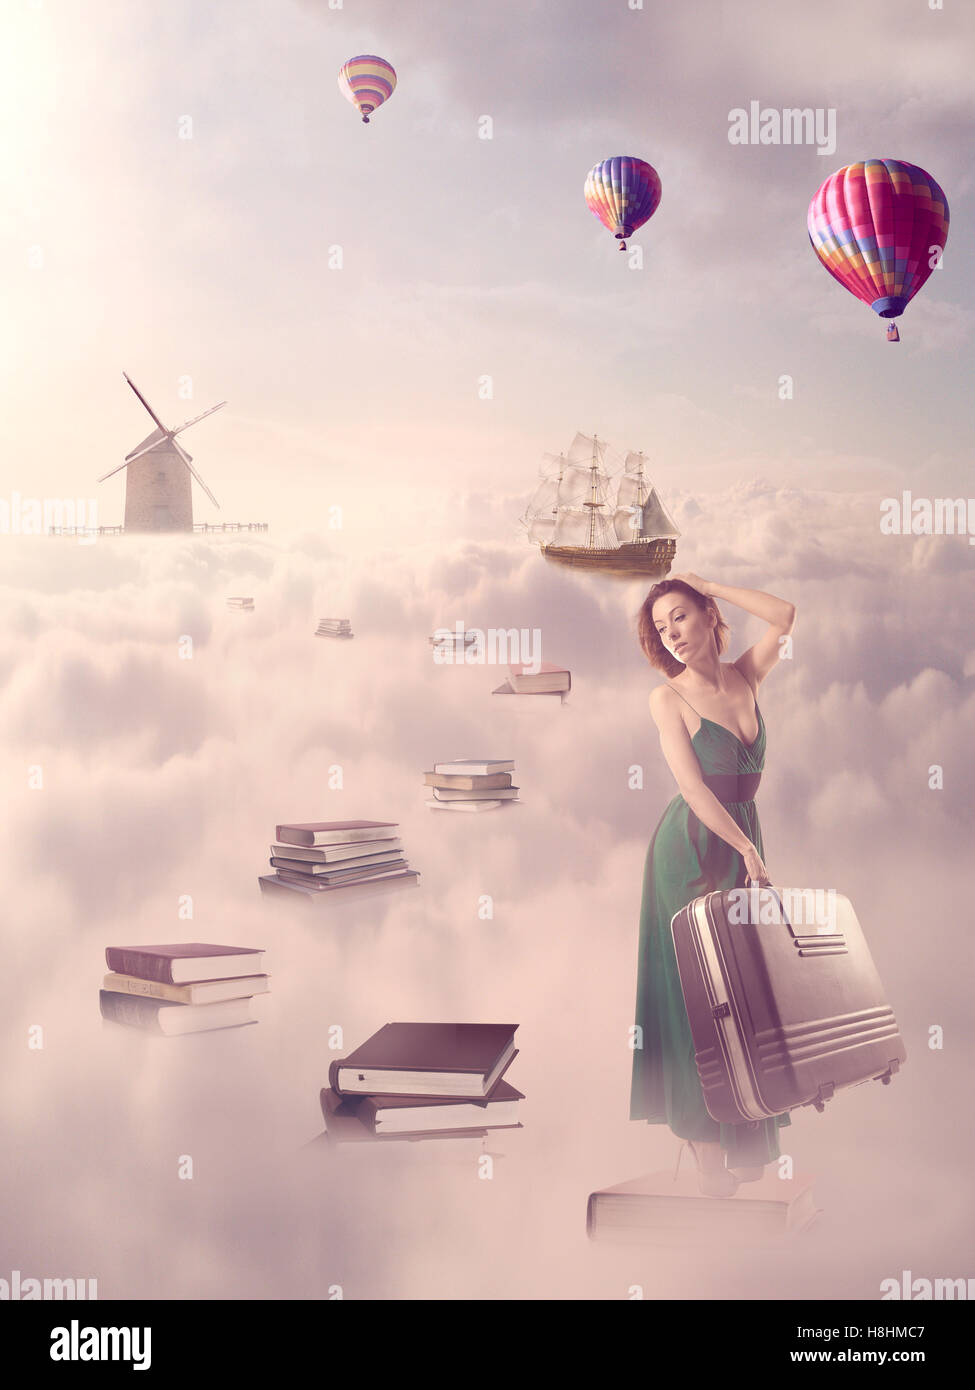 Auf der Suche nach Wissen-Konzept. Fantasie imaginäre Weltbild. Frau zu Fuß über die Buch-Pass über Wolken Himmel mit Windmühle o Stockfoto